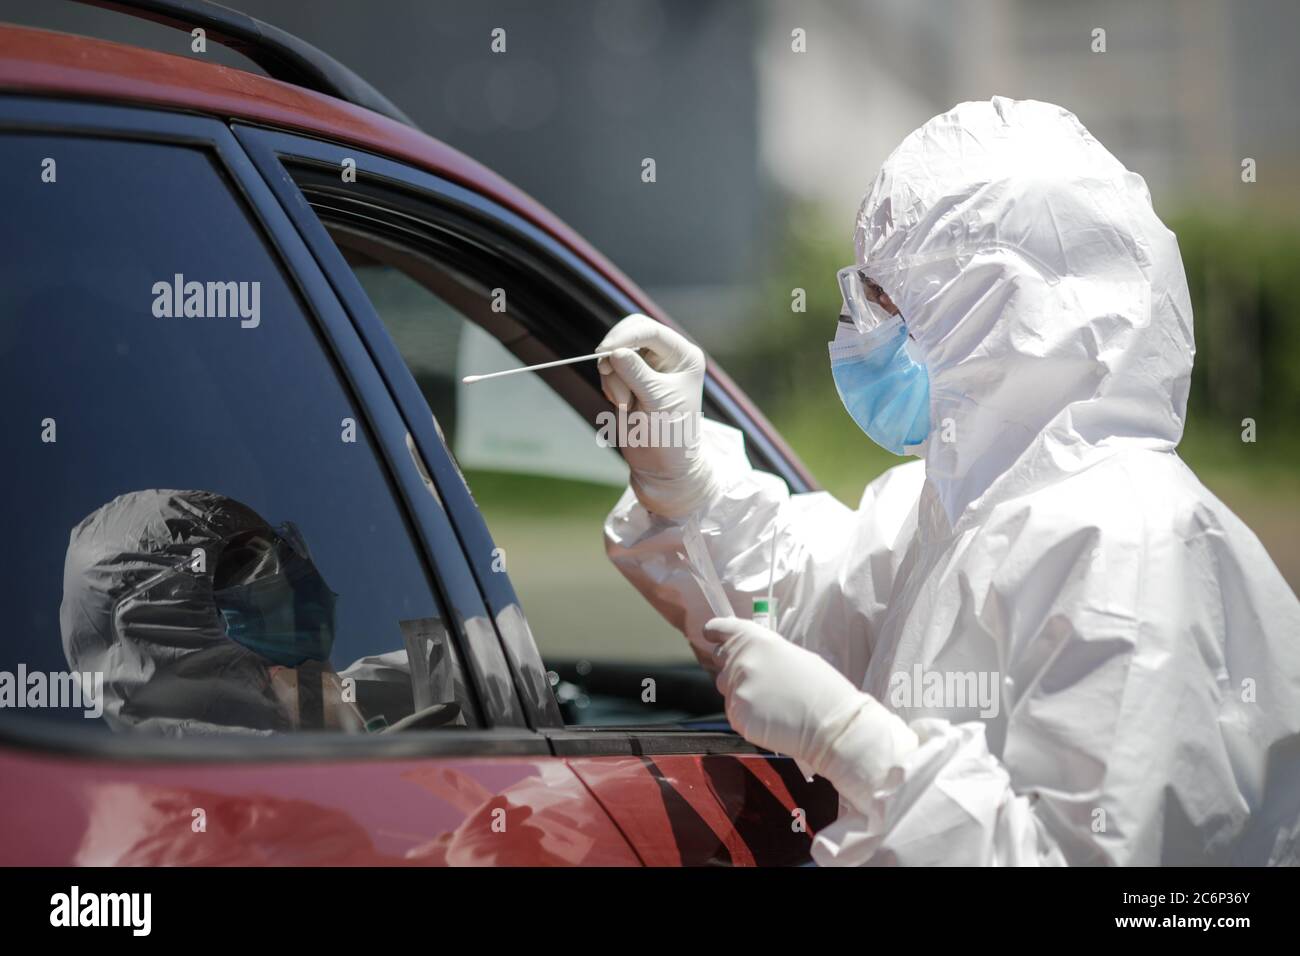 Bucarest / Romania - 11 luglio 2020: Un operatore sanitario utilizza un test CPR (bocca e tampone nasale) su una persona all'interno di un'auto per determinare la presenza o l'abuso Foto Stock